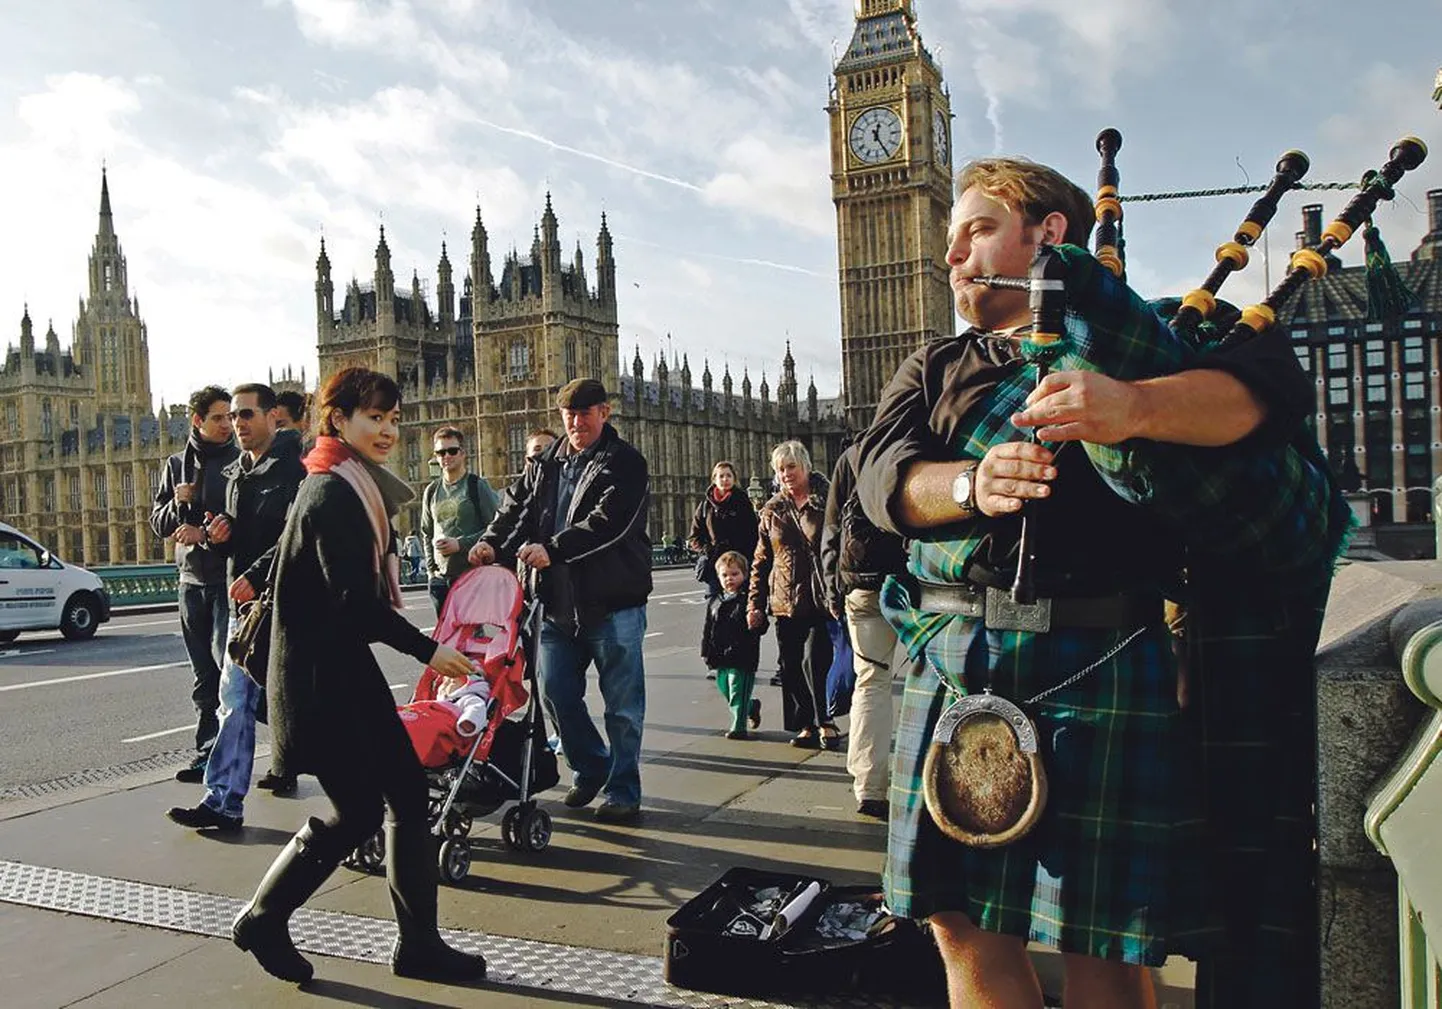 Уличный музыкант в национальном шотландском костюме играет на волынке возле Вестминстерского дворца в Лондоне.